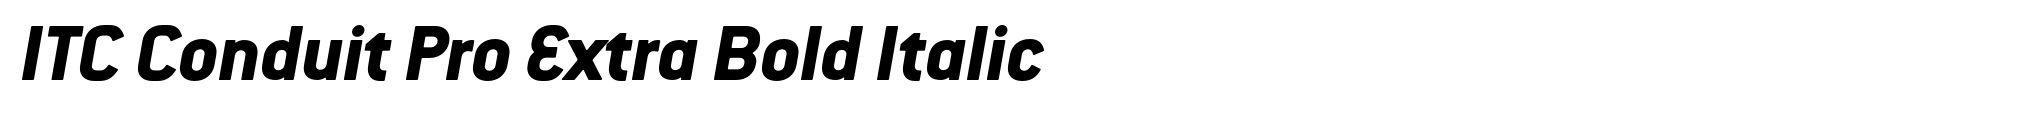 ITC Conduit Pro Extra Bold Italic image